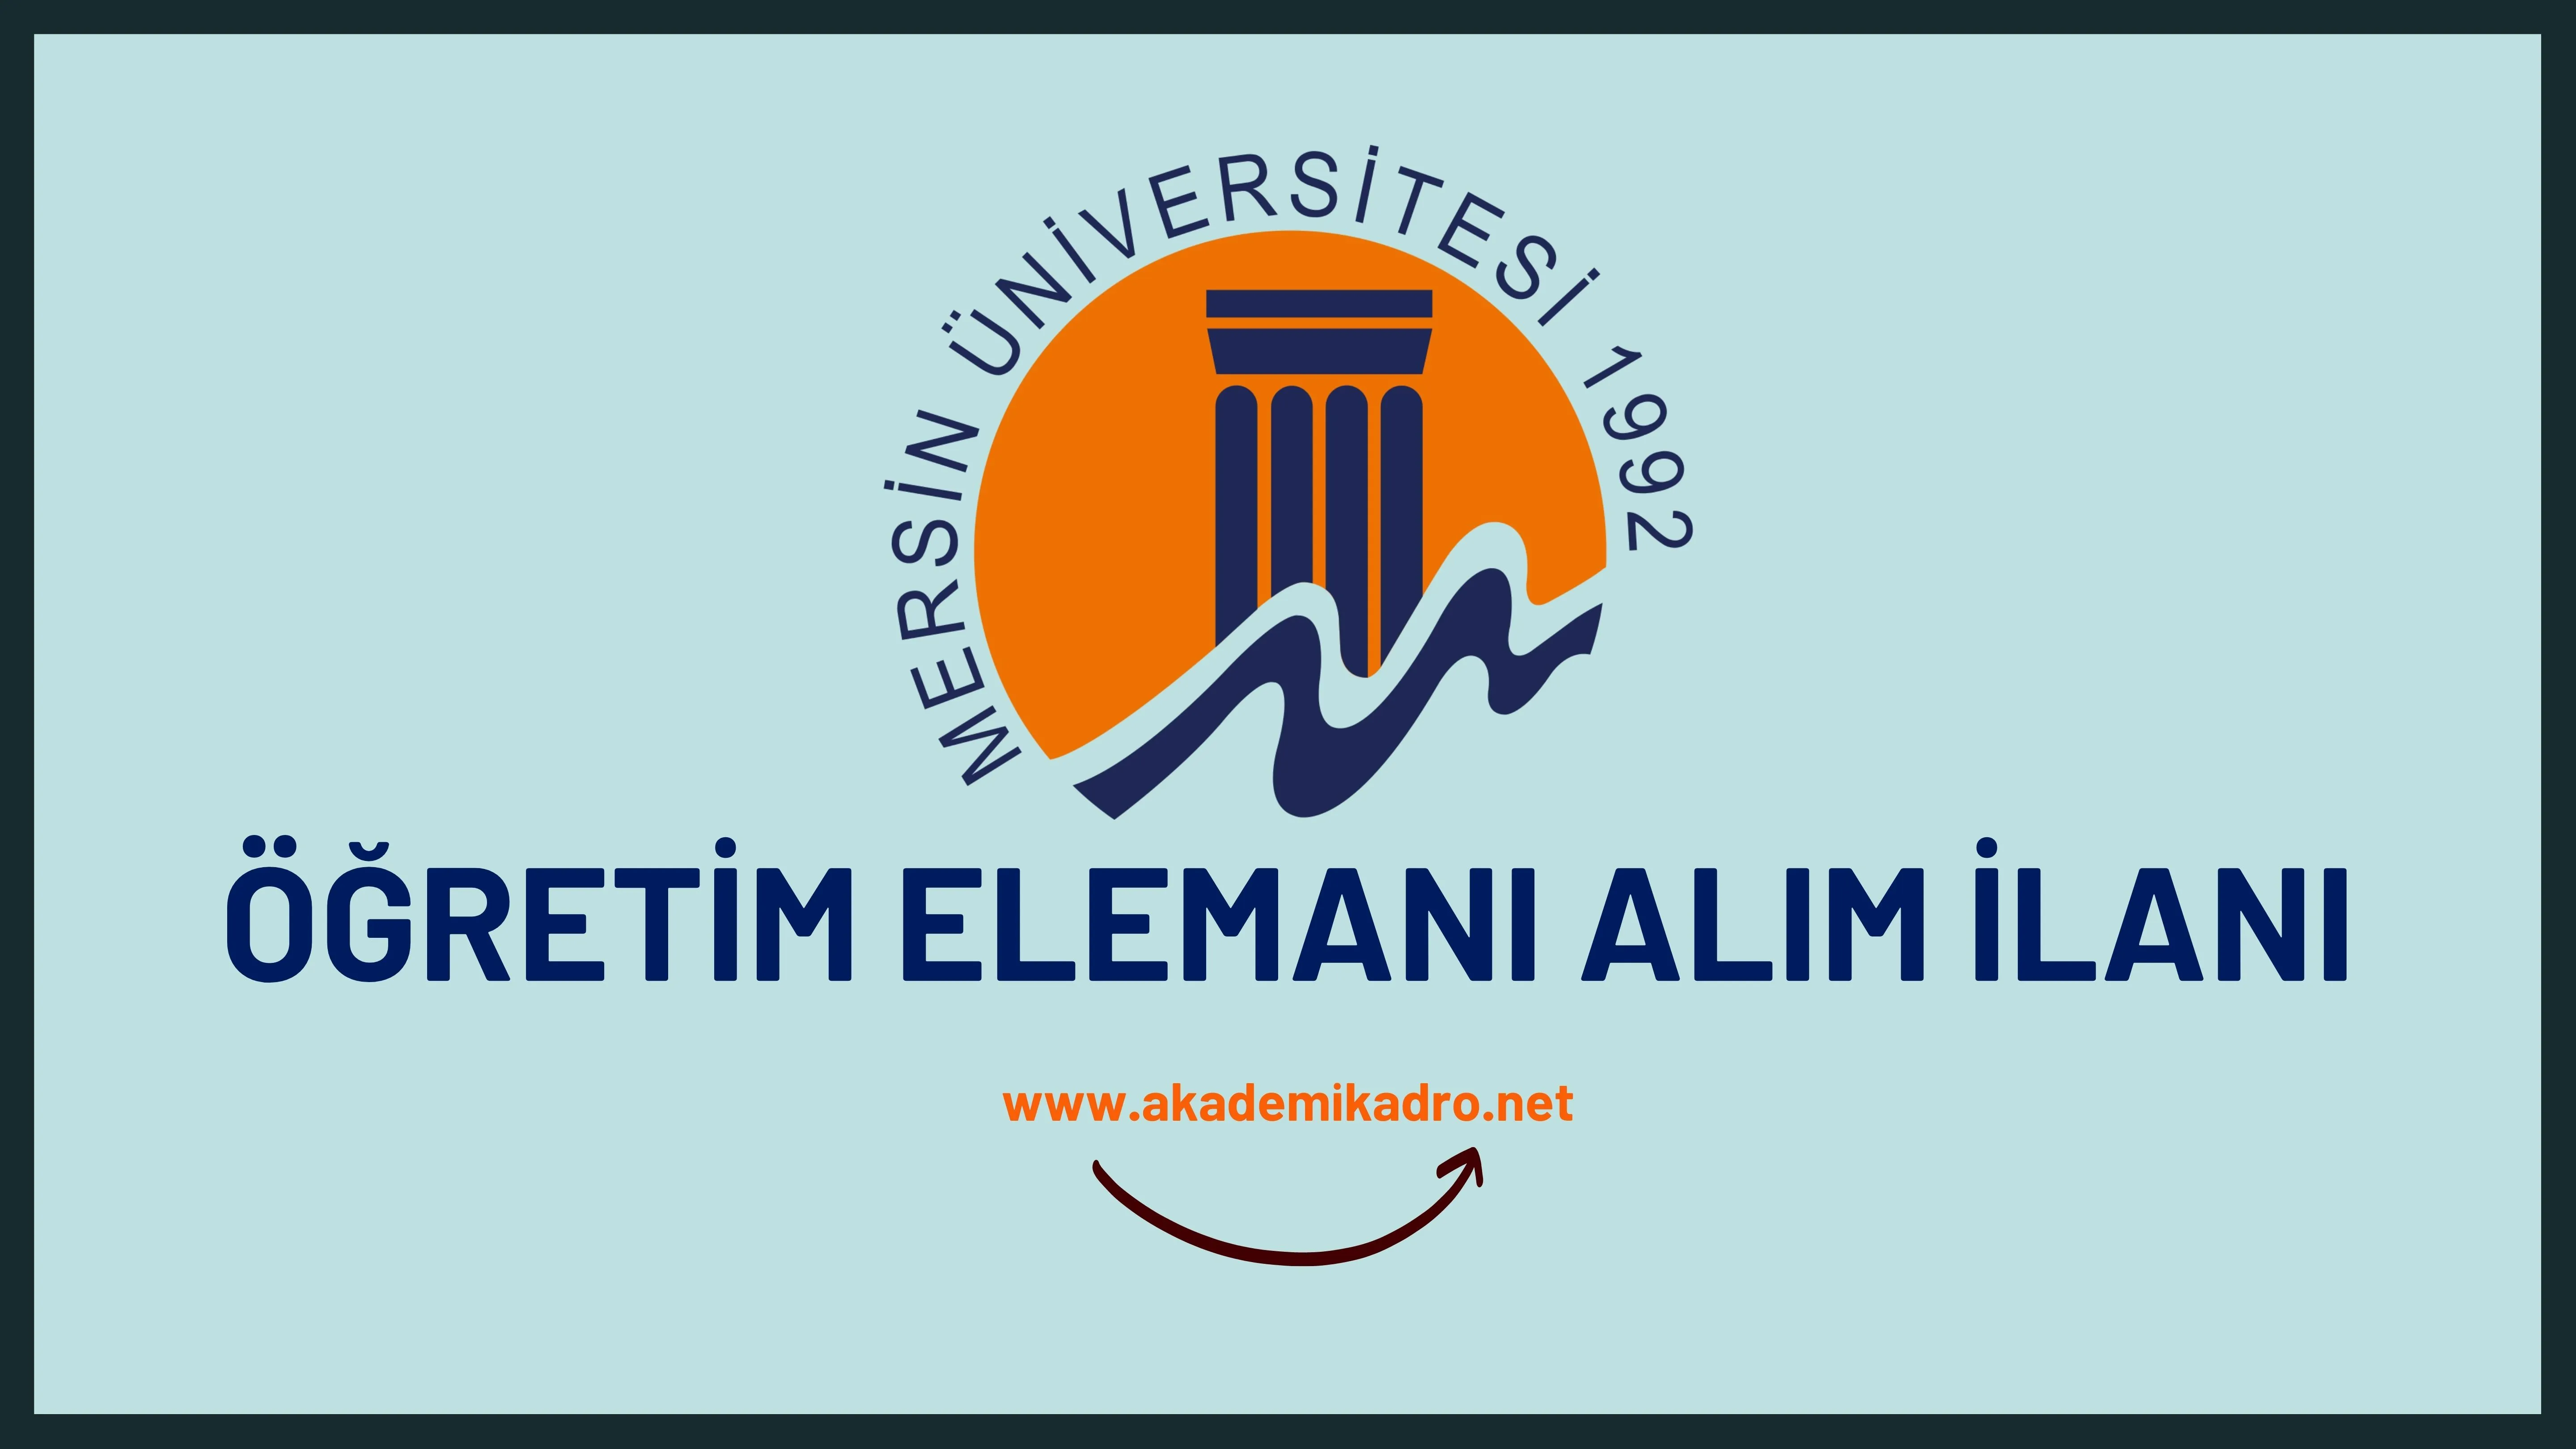 Mersin Üniversitesi 42 Öğretim üyesi, 3 Öğretim görevlisi ve 2 Araştırma görevlisi alacaktır. Son başvuru tarihi 17 Ekim 2022